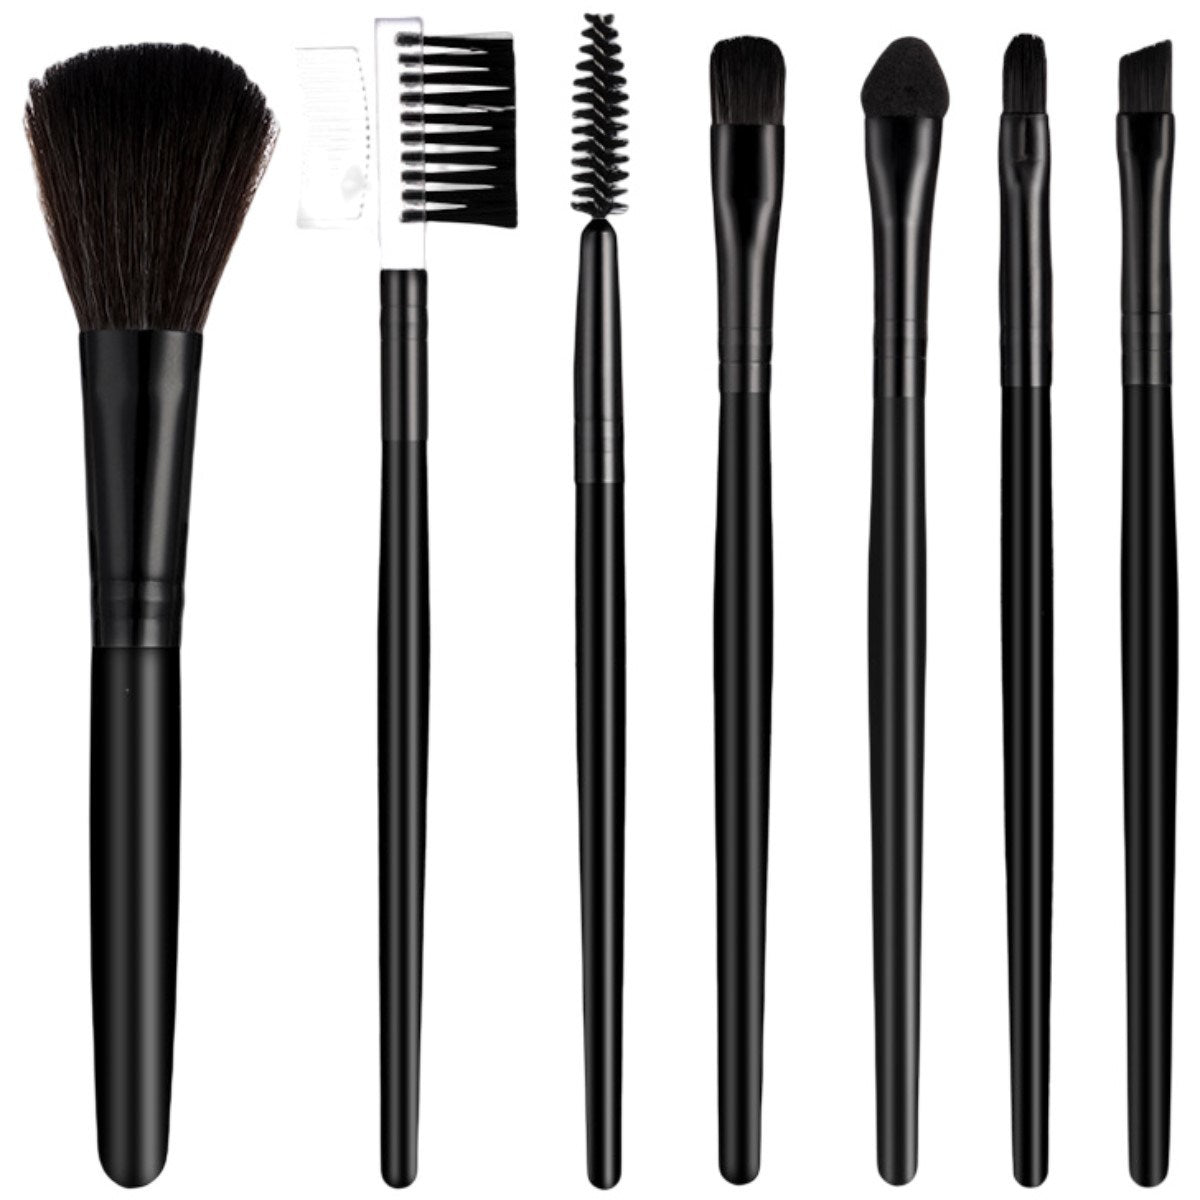 The 7-pack Makeup Brush Set Contains Blush Brush, Eyebrow Brush, Lip Brush, Eyeshadow Brush